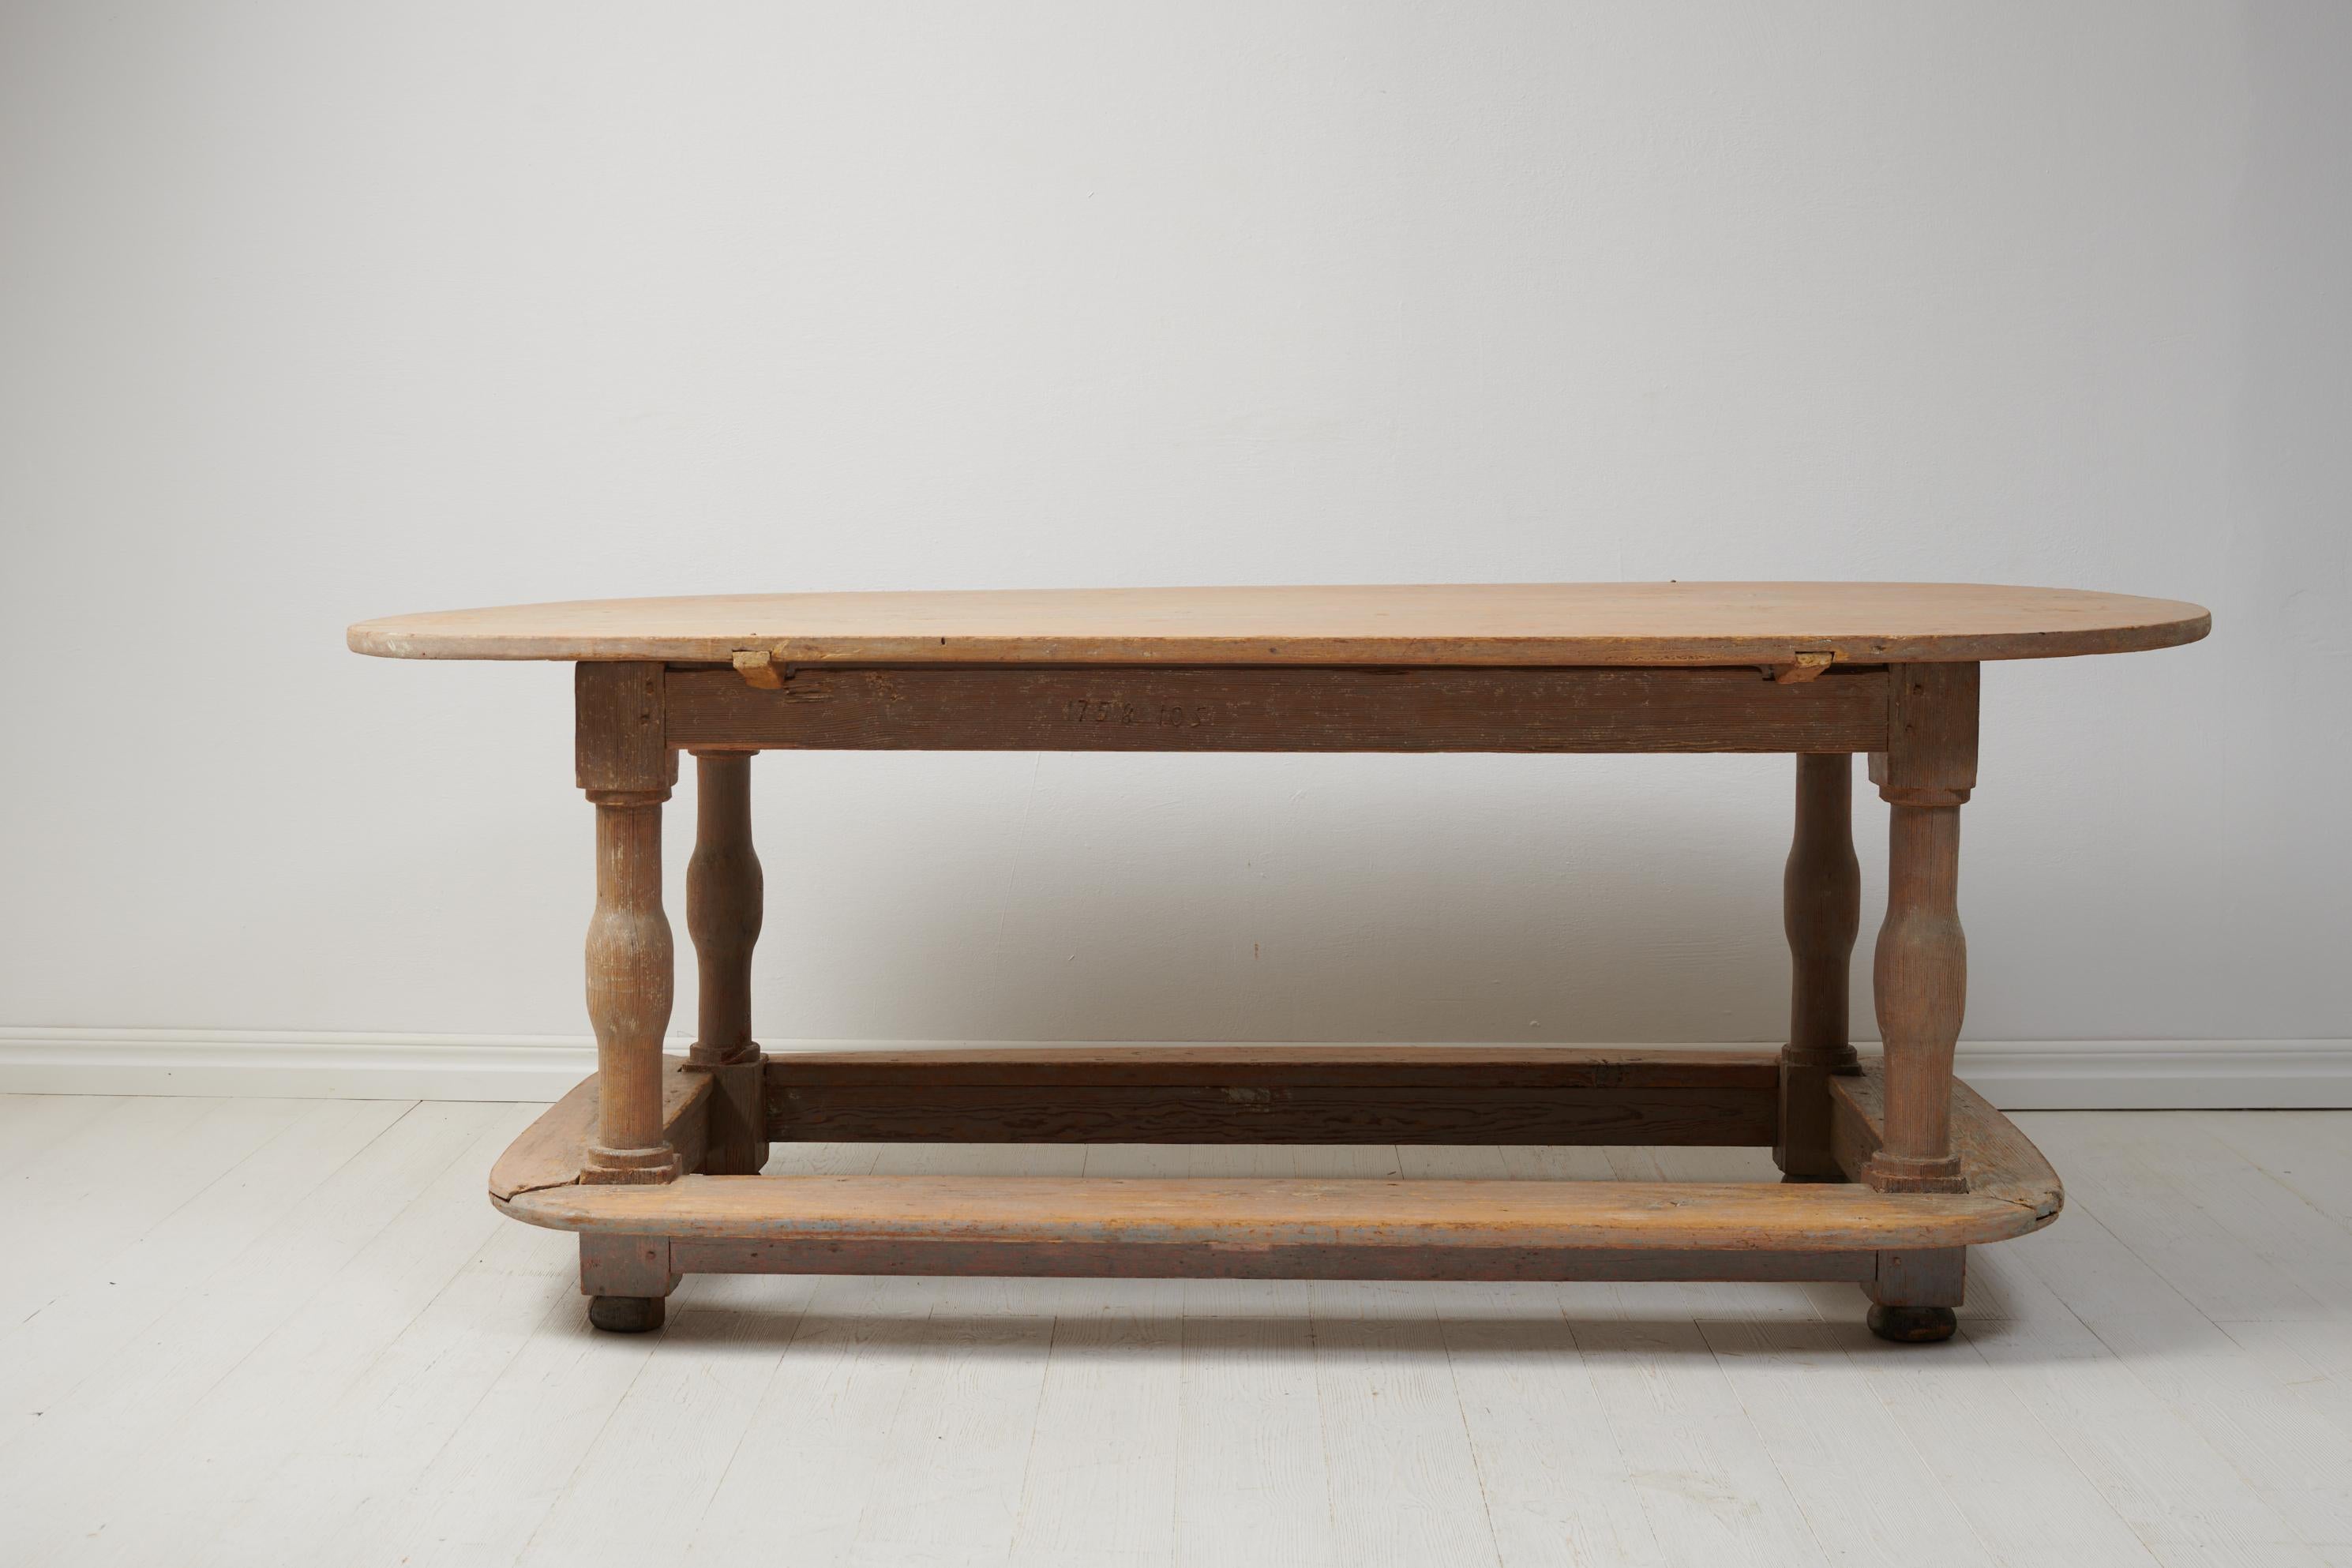 Seltener echter Barocktisch aus Schweden, datiert 1758. Der Tisch wird in Handarbeit aus massivem Kiefernholz gefertigt. Es gibt eine sehr dünne Schicht der ursprünglichen graublauen Farbe, wo die Kiefer darunter durchscheint. Dadurch entsteht eine